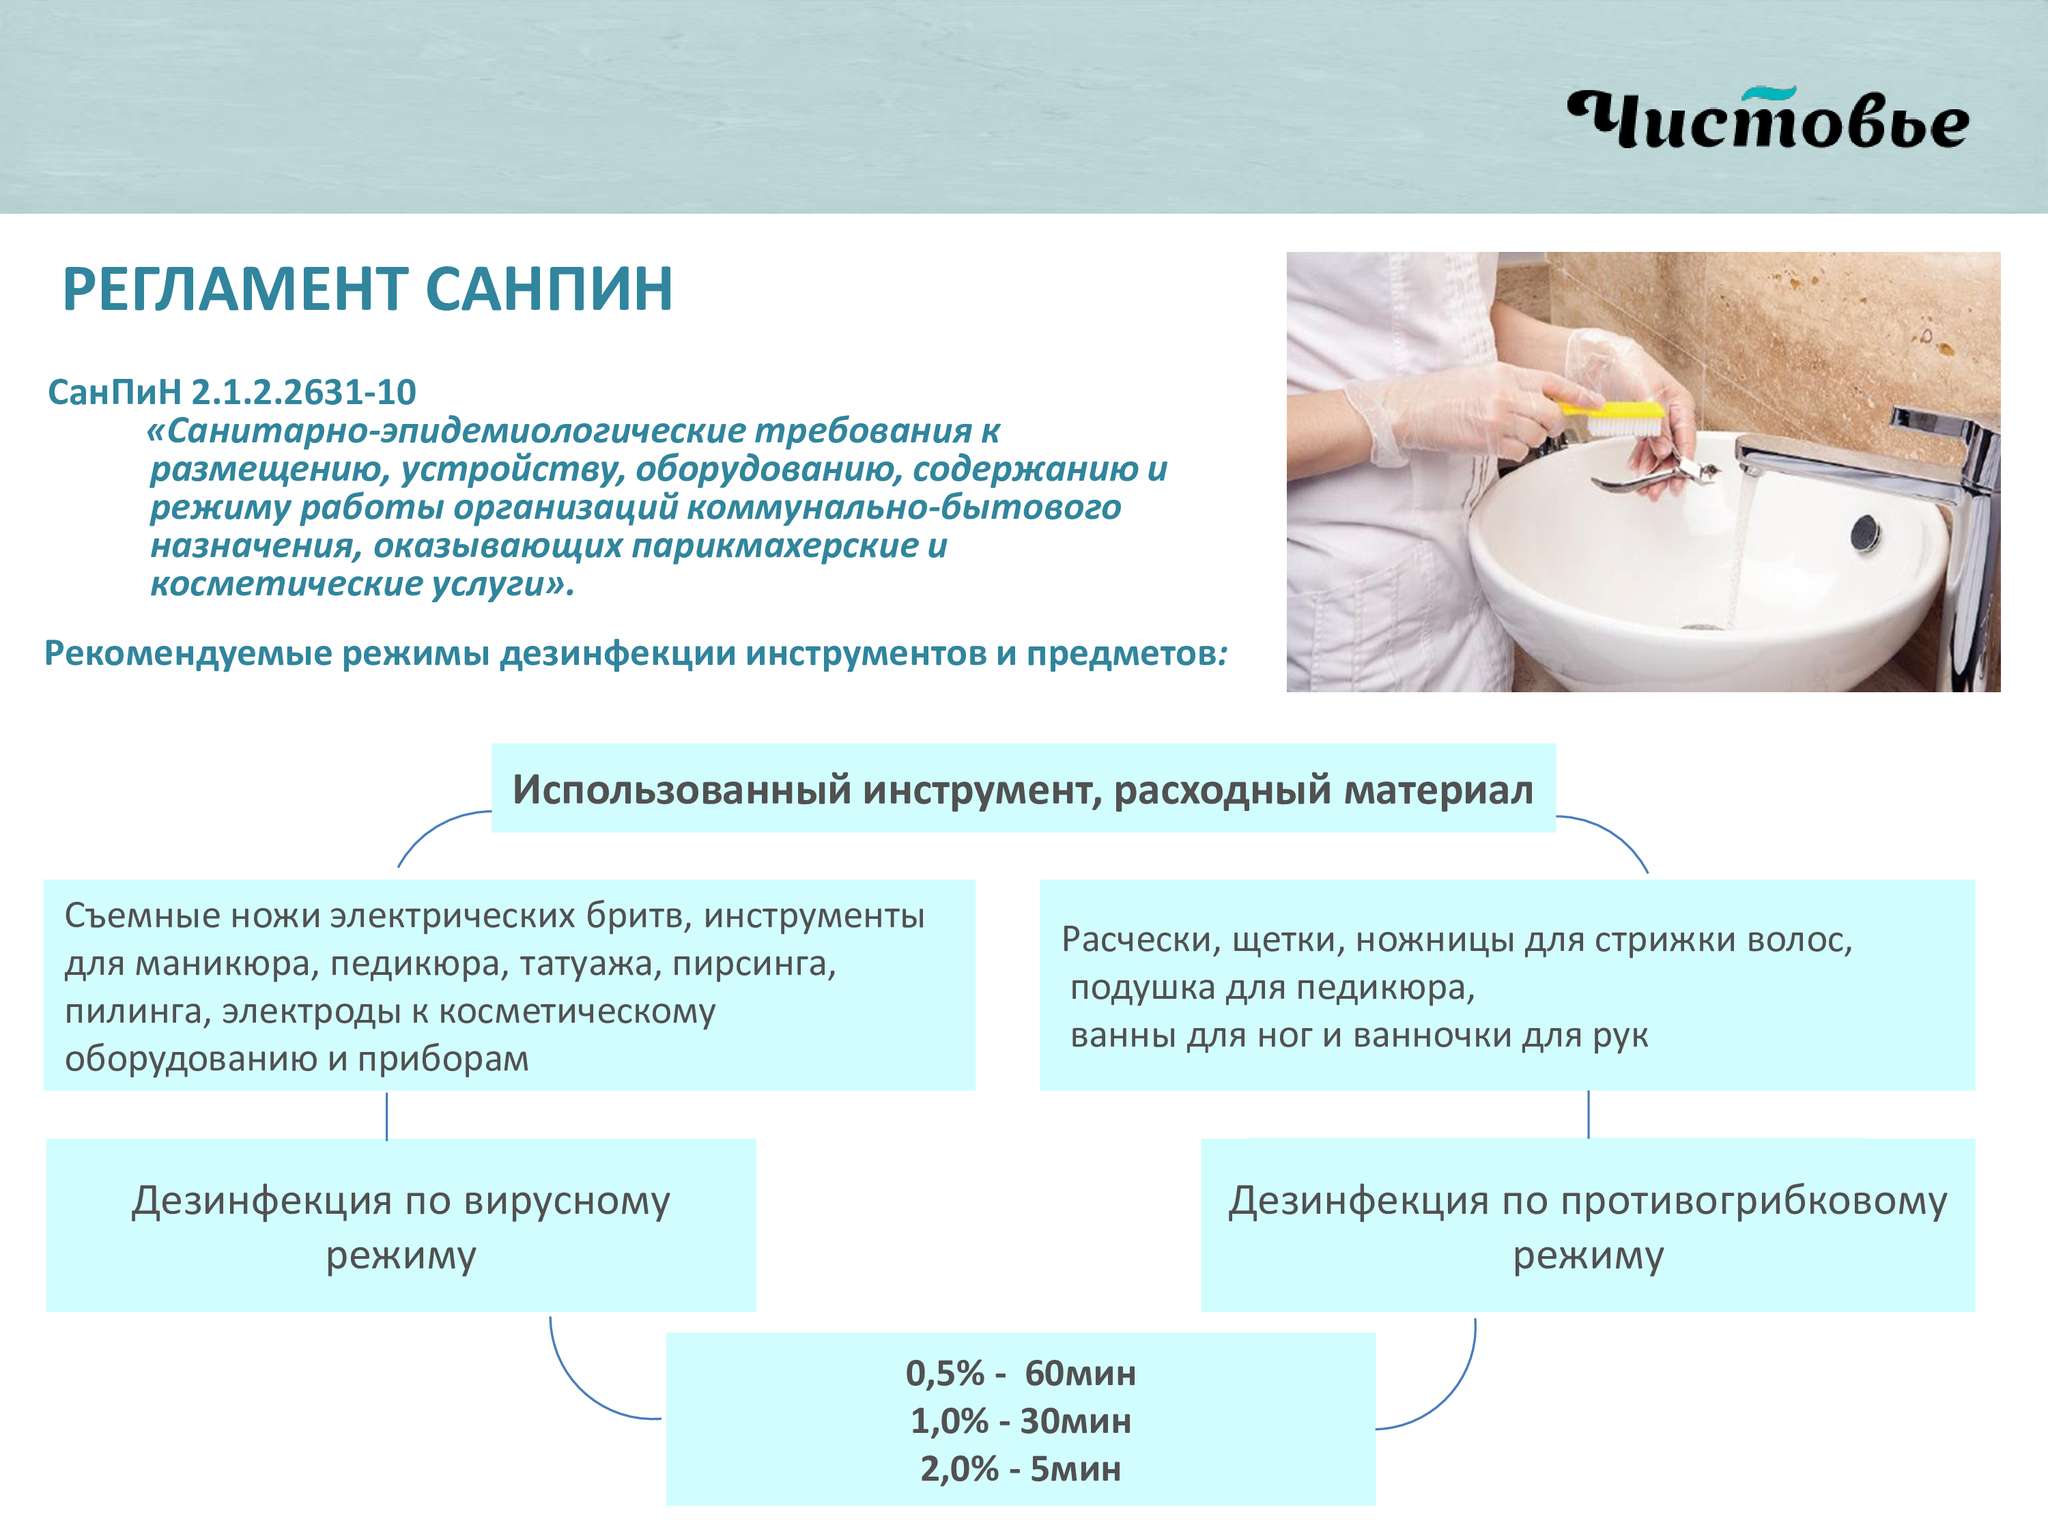 Стерилизация инструментов для маникюра: правила и требования, санитарные нормы, методы дезинфекции - janet.ru